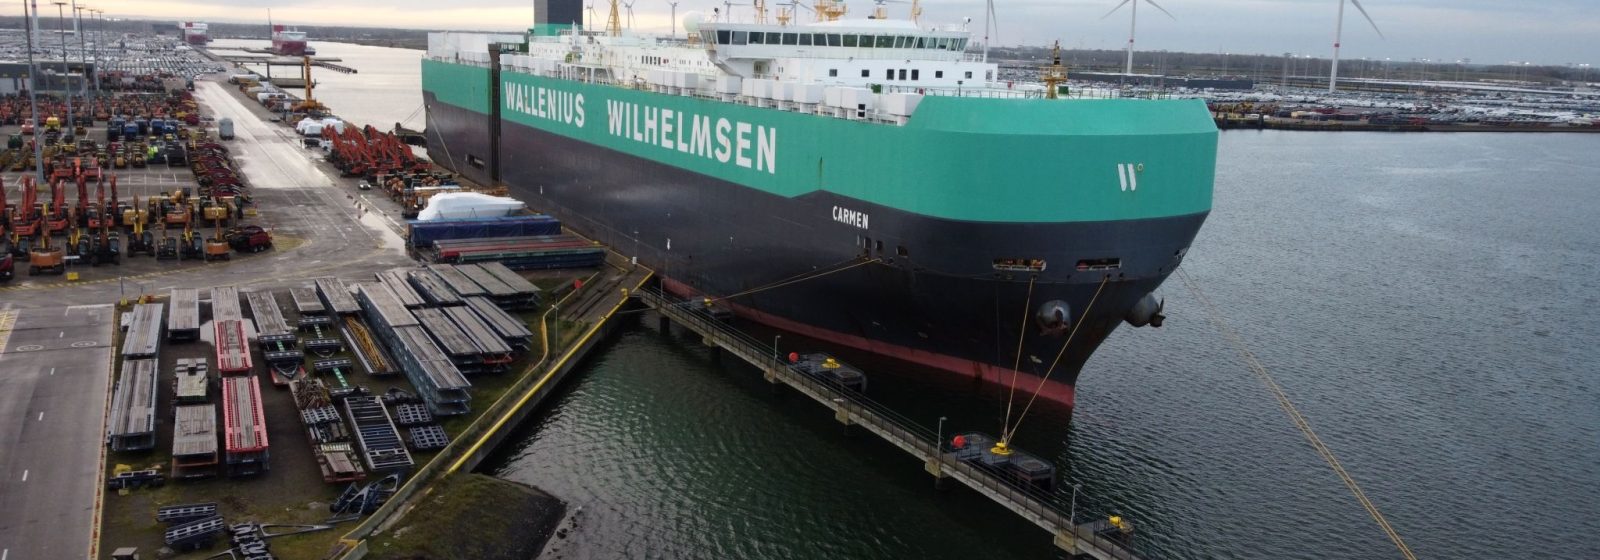 Roroschip 'Carmen' van Wallenius Wilhelmsen in Zeebrugge